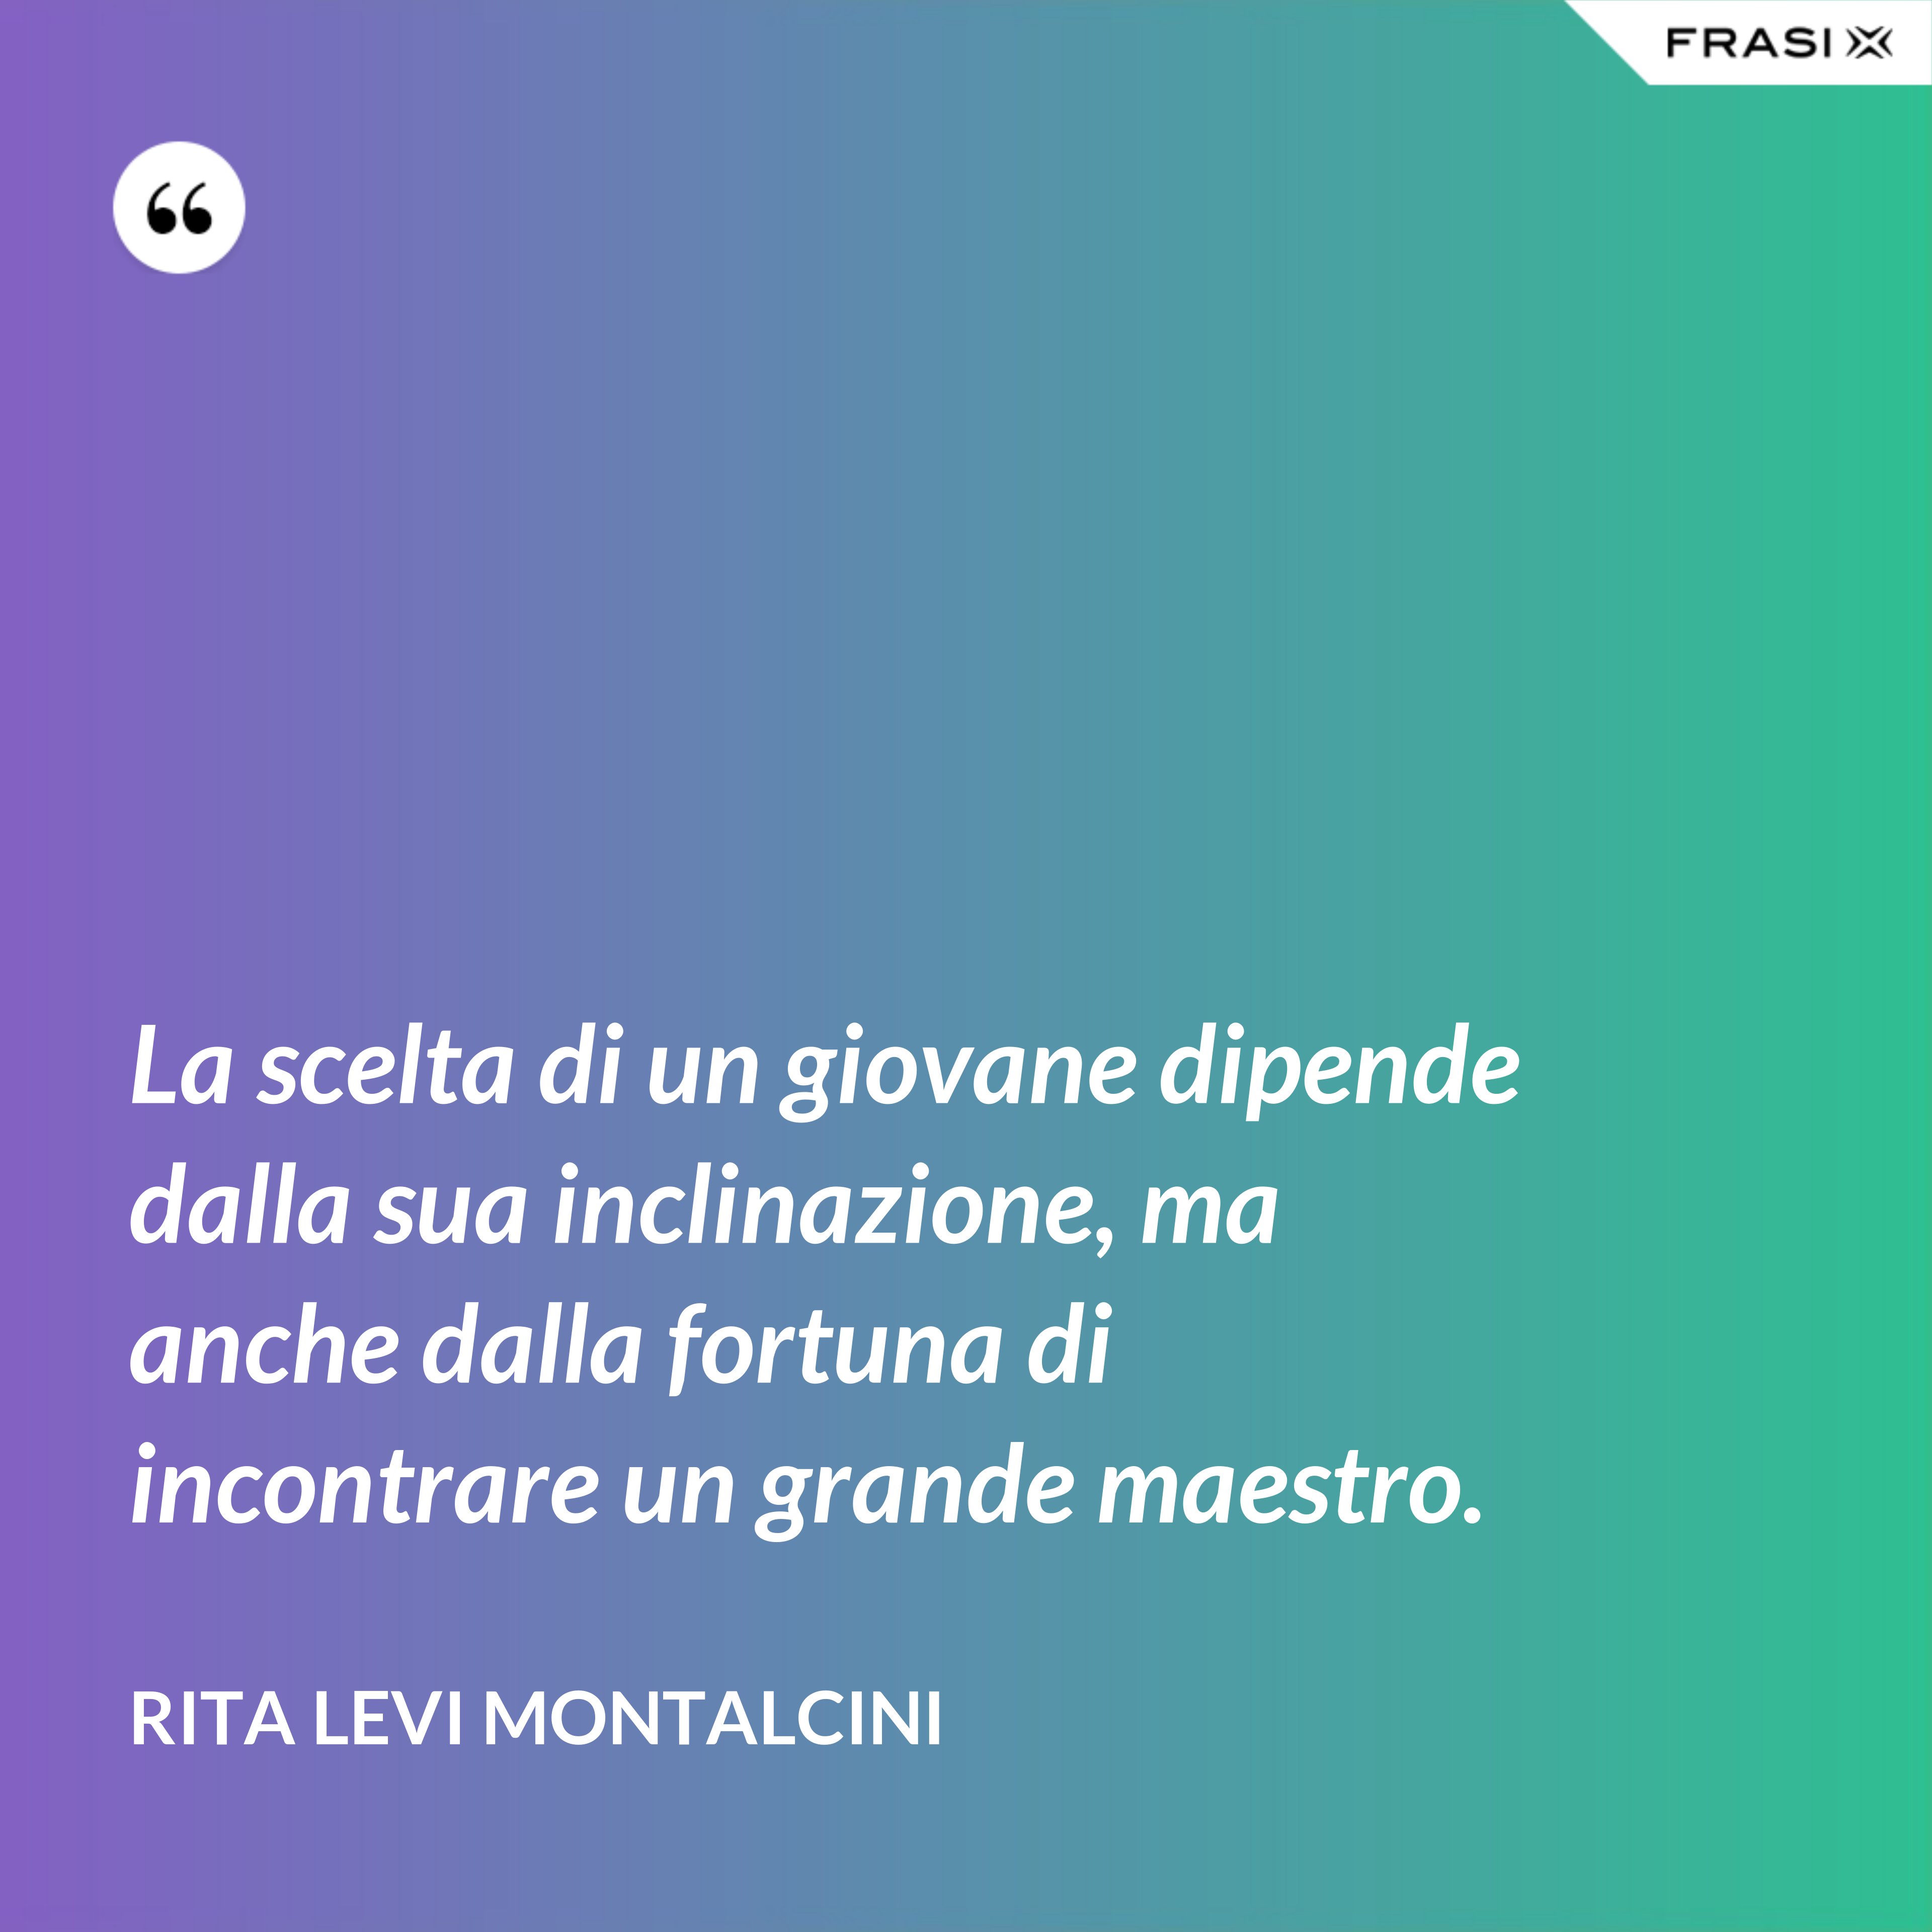 La scelta di un giovane dipende dalla sua inclinazione, ma anche dalla fortuna di incontrare un grande maestro. - Rita Levi Montalcini